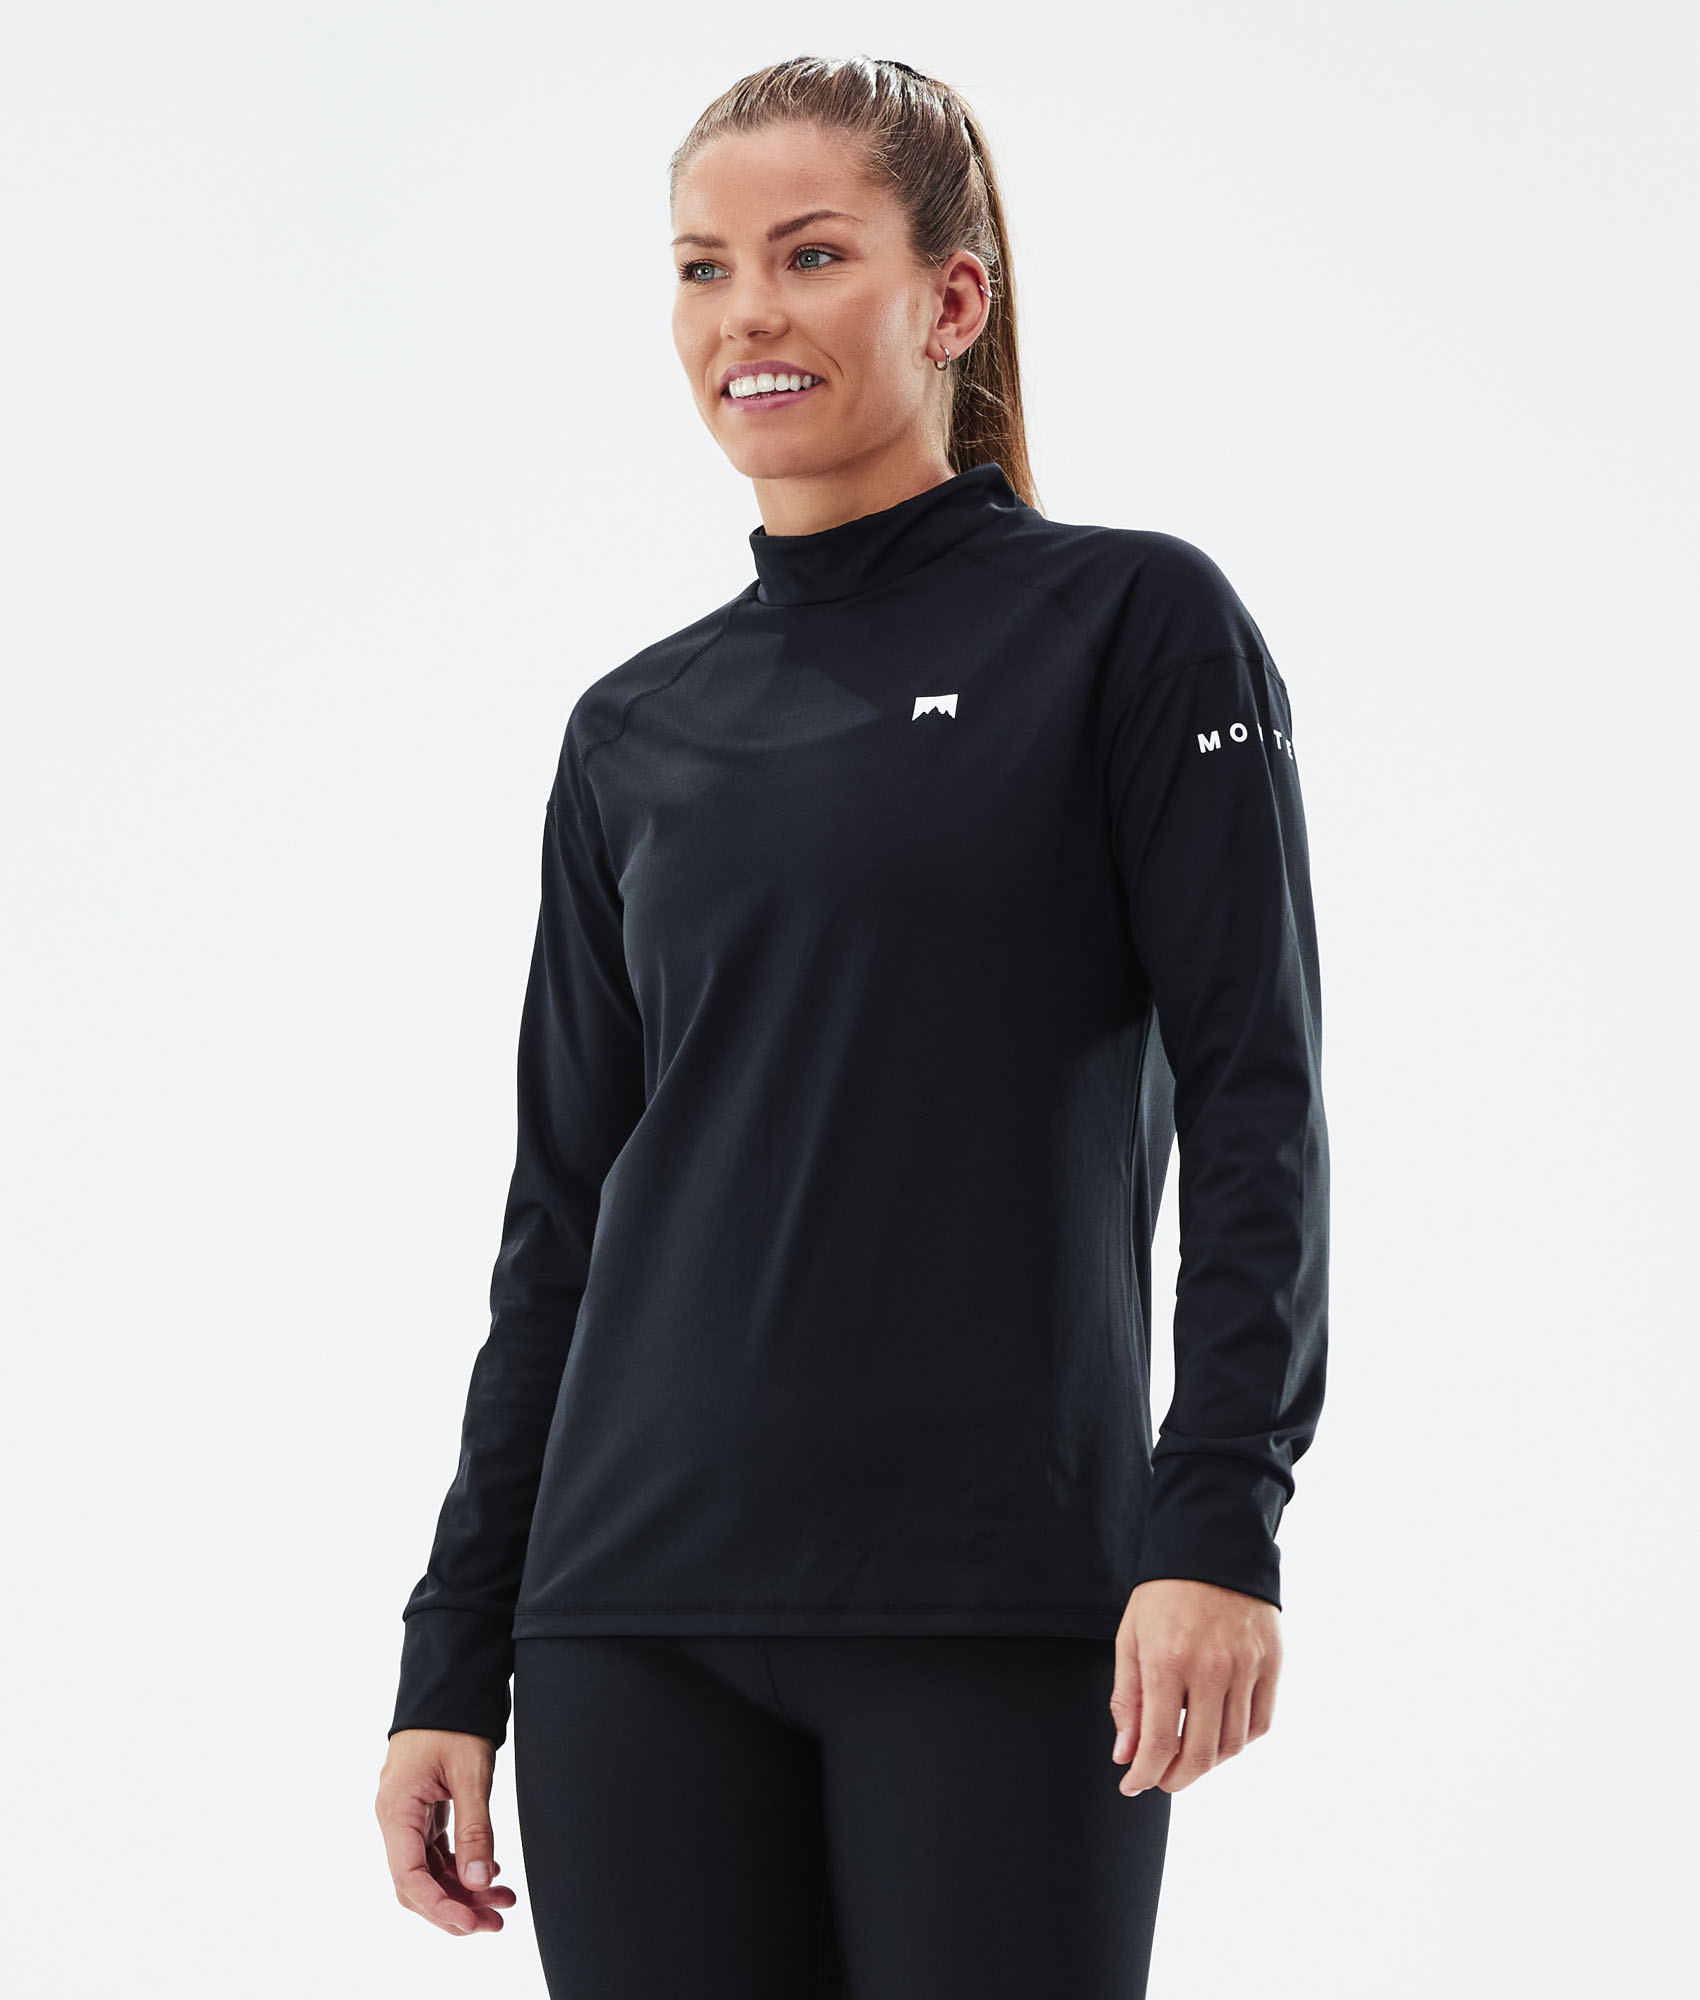 Manche Longue Maillot de Compression Base Layer sous-Vêtements Thermique pour Sports Ski Running MEETWEE Tee Shirt Thermique Femme 